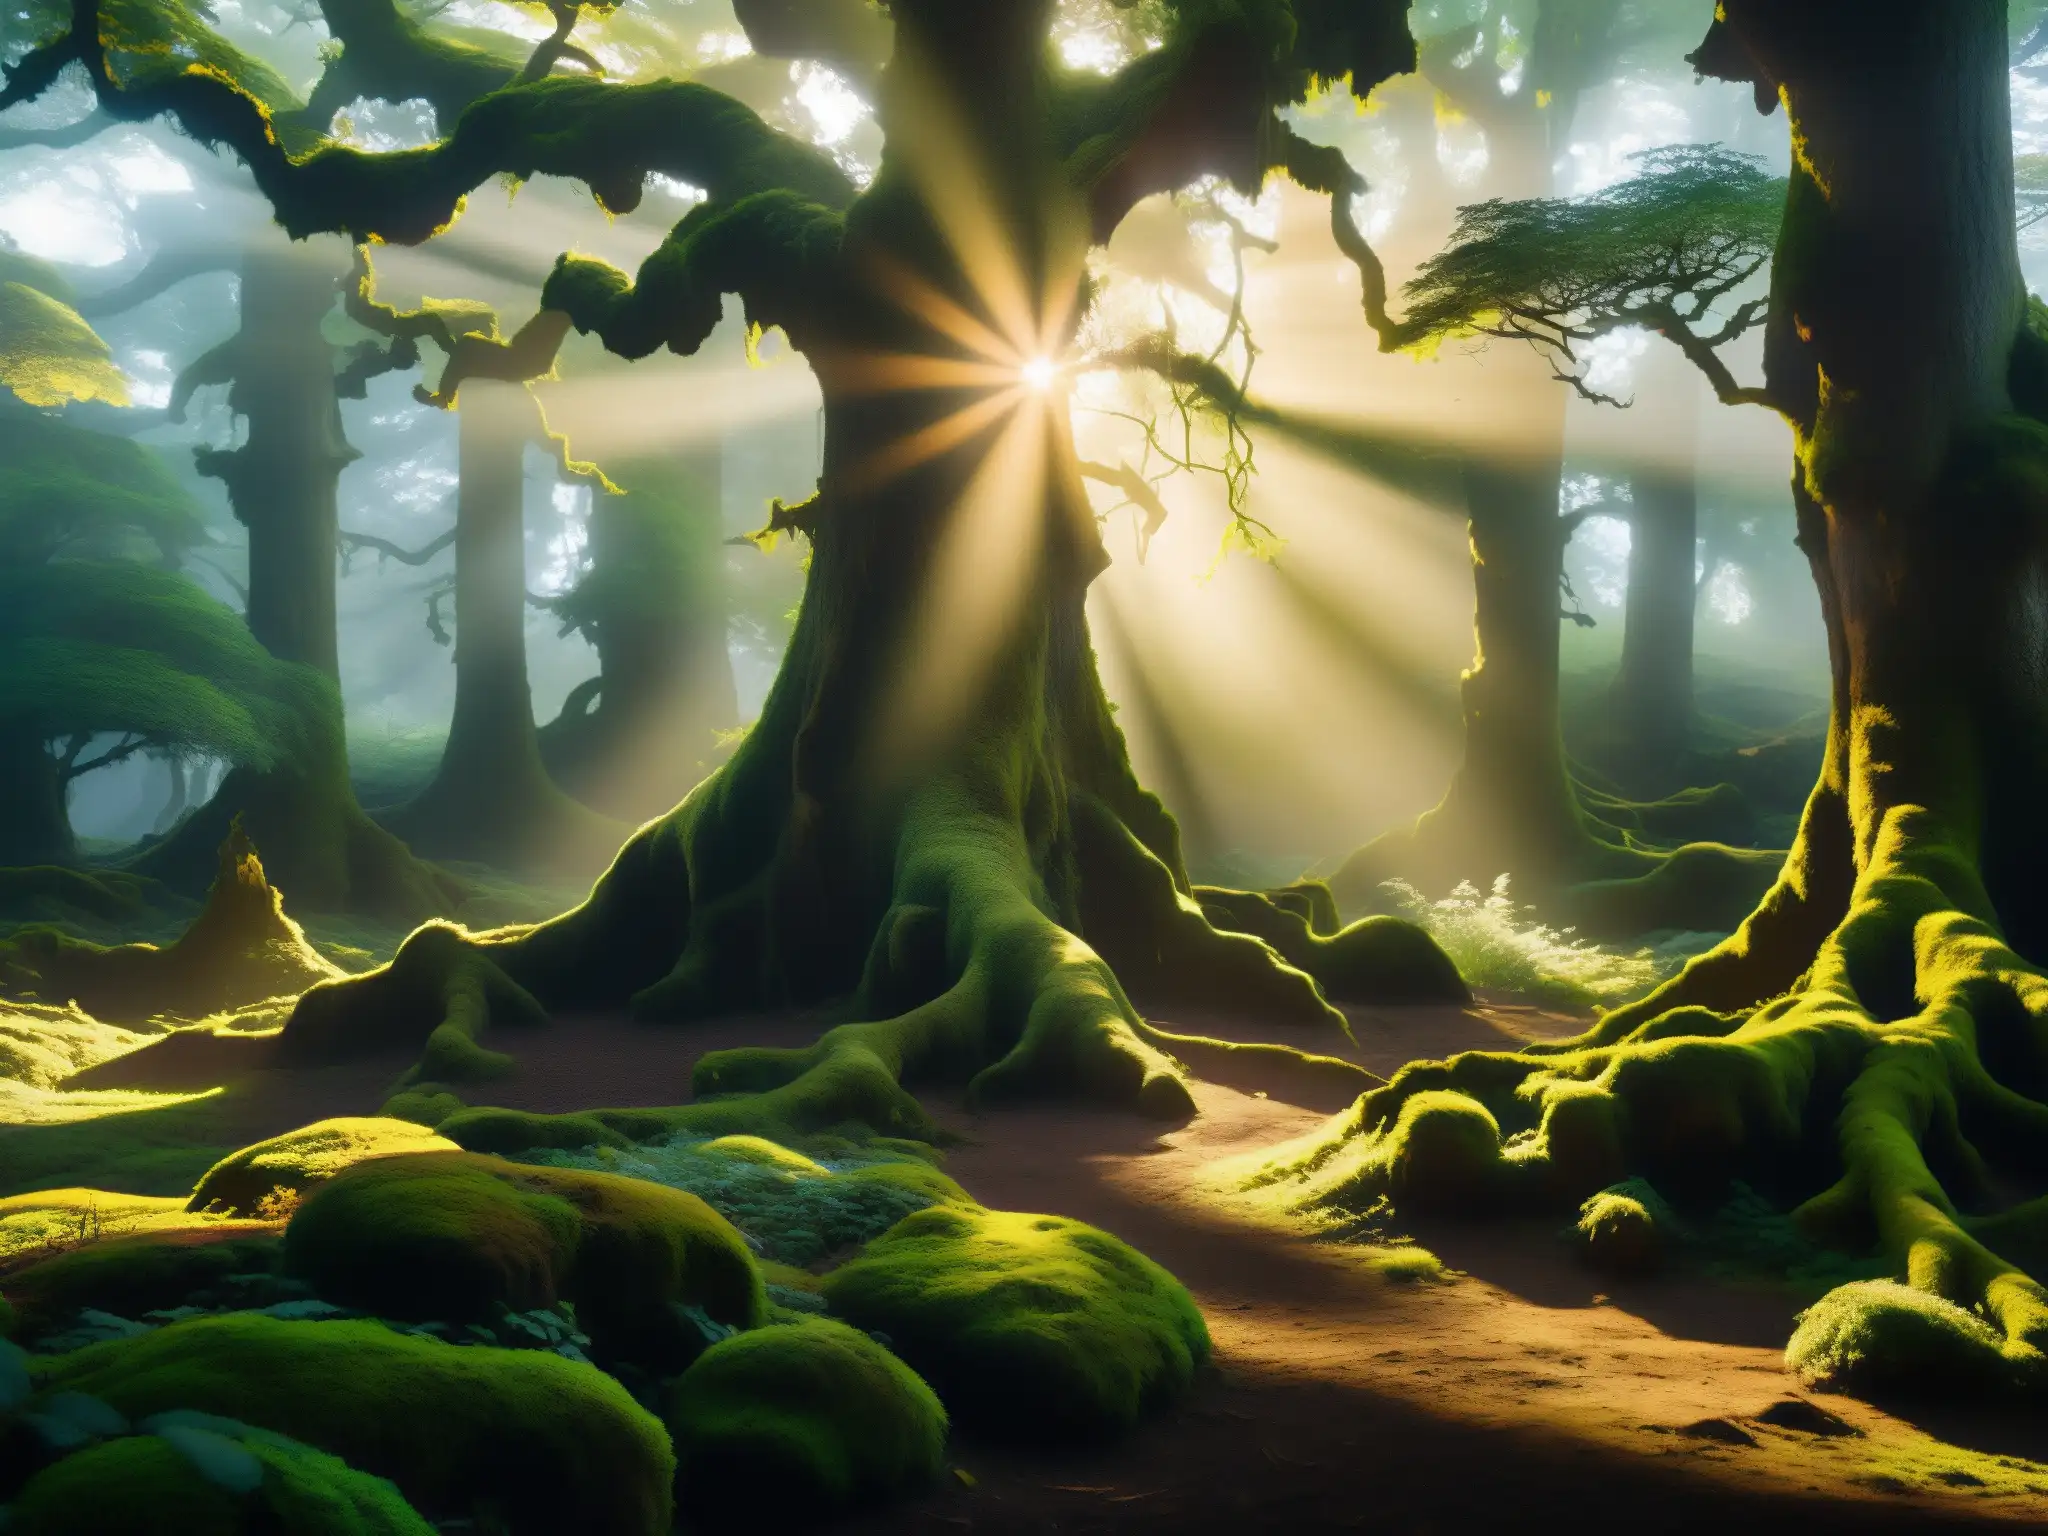 Majestuoso bosque neblinoso con árboles antiguos y misteriosa figura entre la vegetación, evocando los mitos y leyendas Sanjay Van